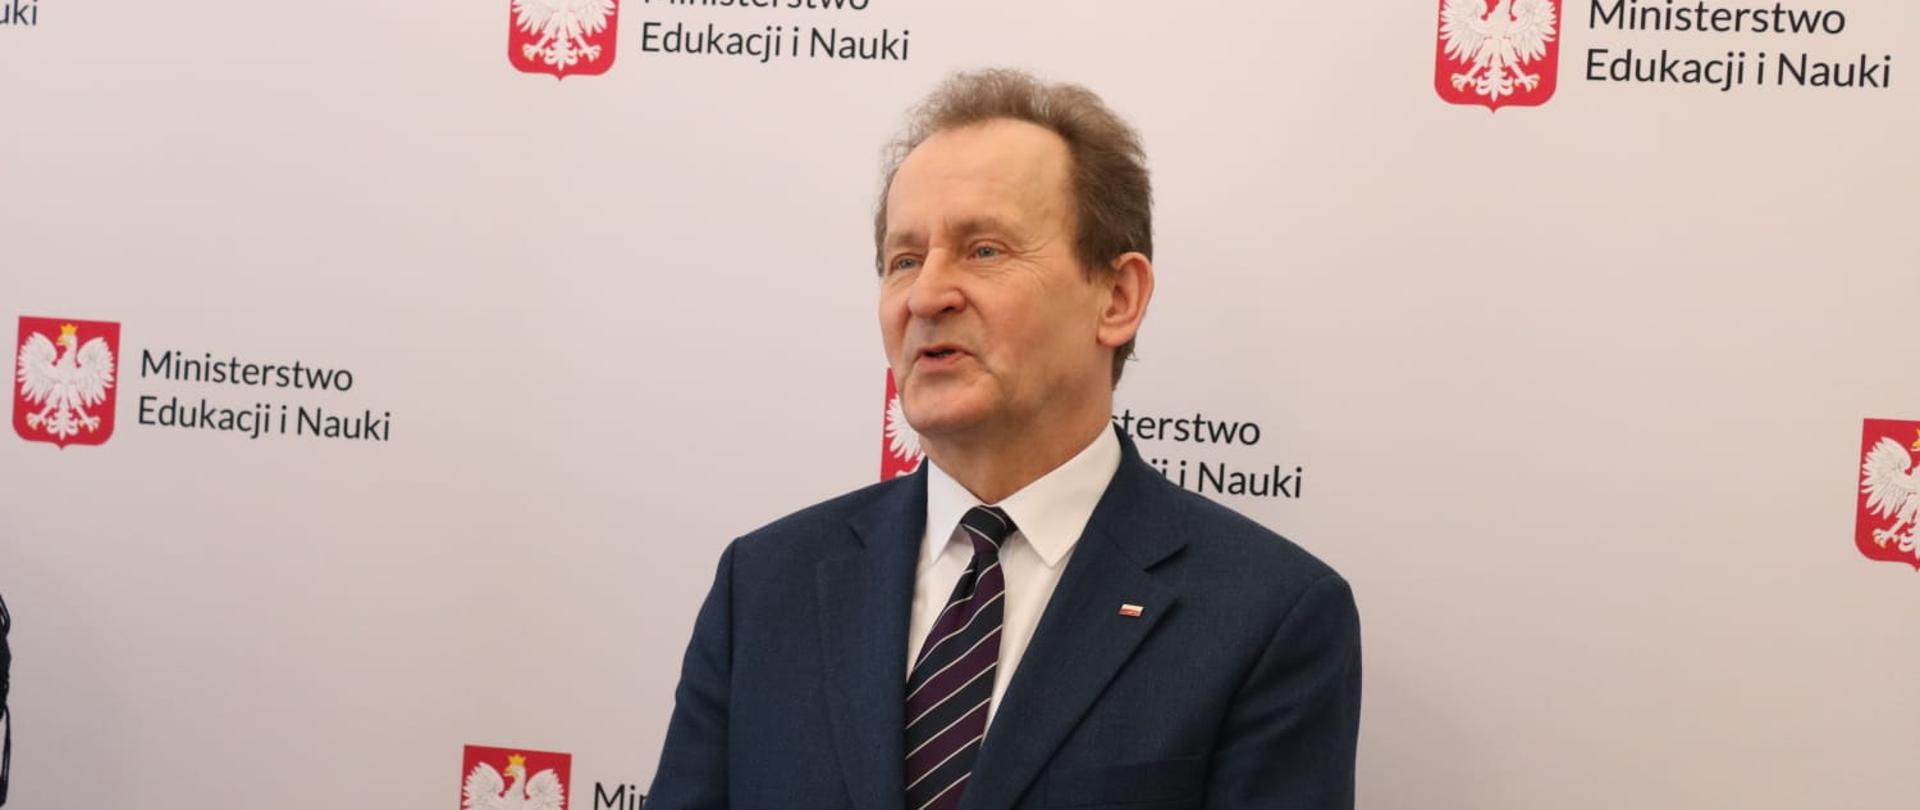 Wiceminister Włodzimierz Bernacki podczas uroczystości, za nim stoi baner z napisem Ministerstwo Edukacji i Nauki.